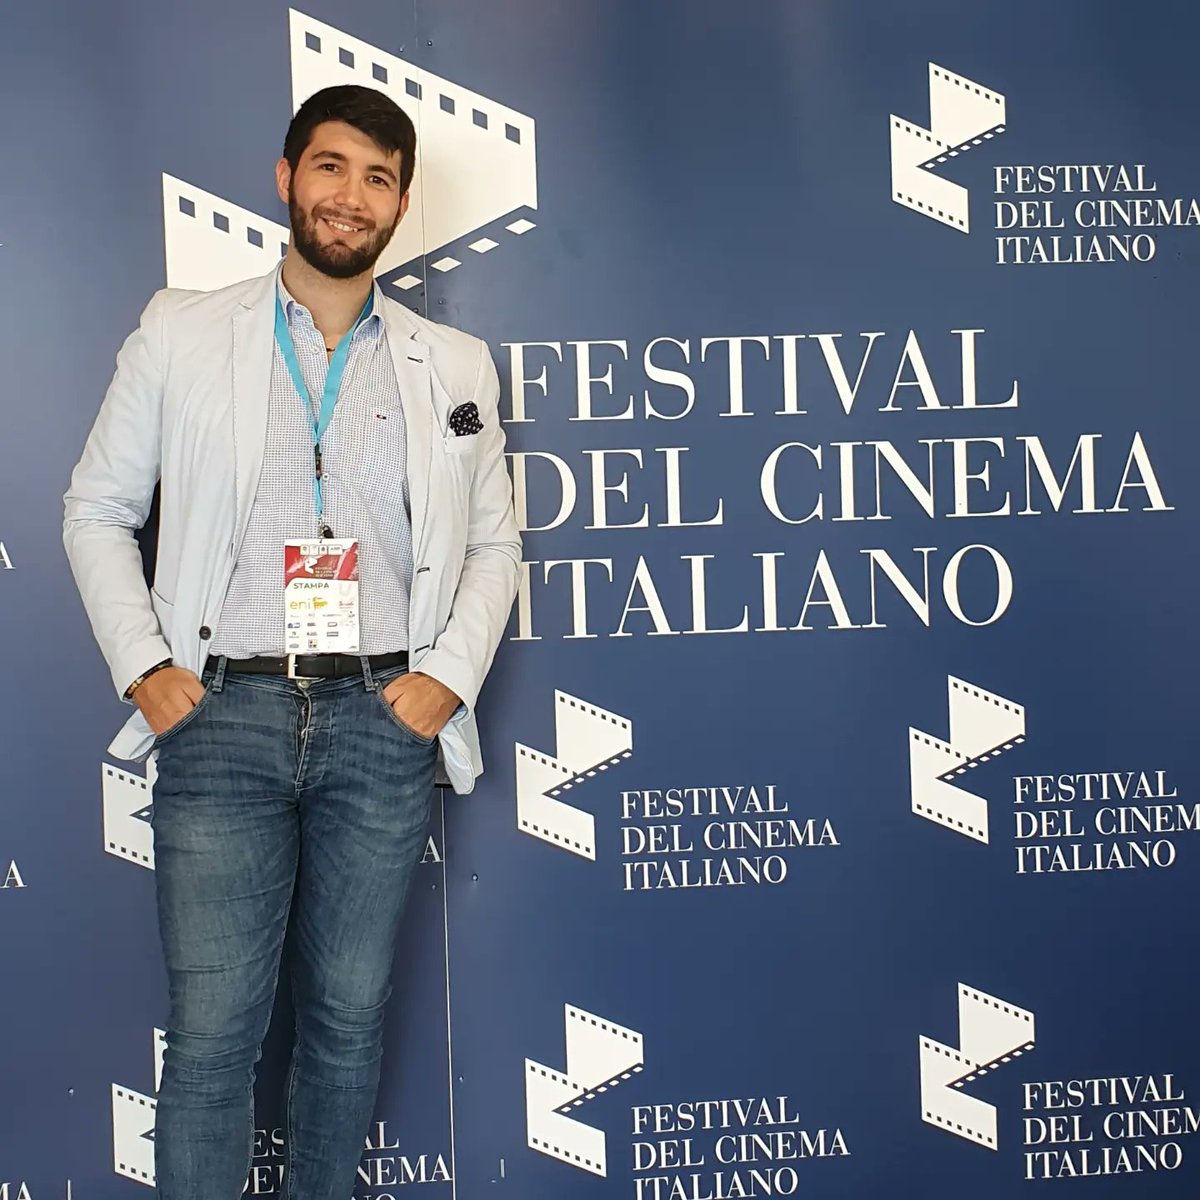 La prima è andata 📹🎤

#dayone #festivaldelcinemaitaliano #cinema #festival #spettacolo #interviste #televisione #milazzo